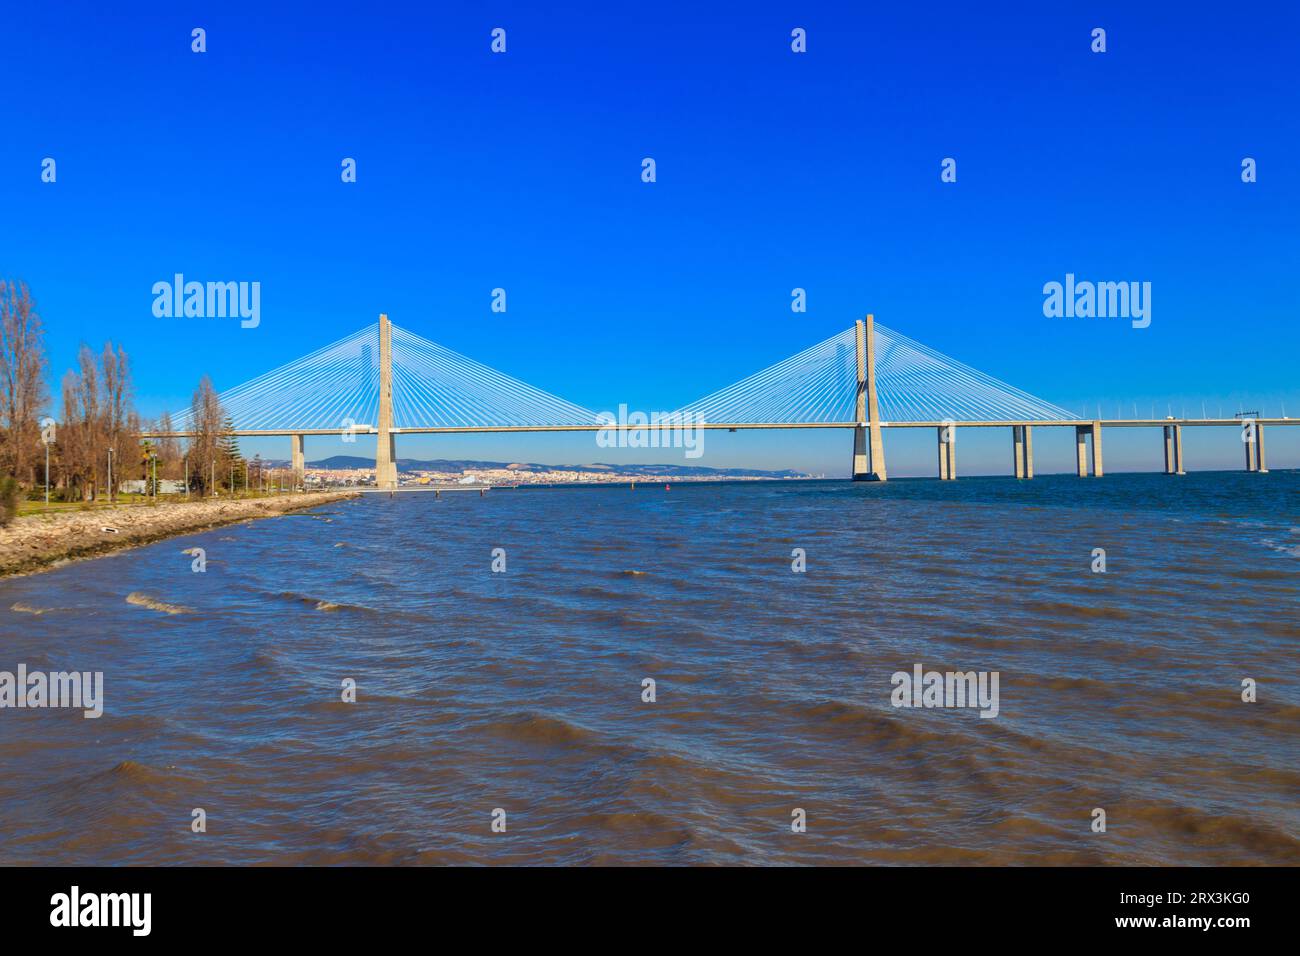 Dal ponte Vasco da Gama sul fiume Tago a Lisbona, Portogallo Foto Stock